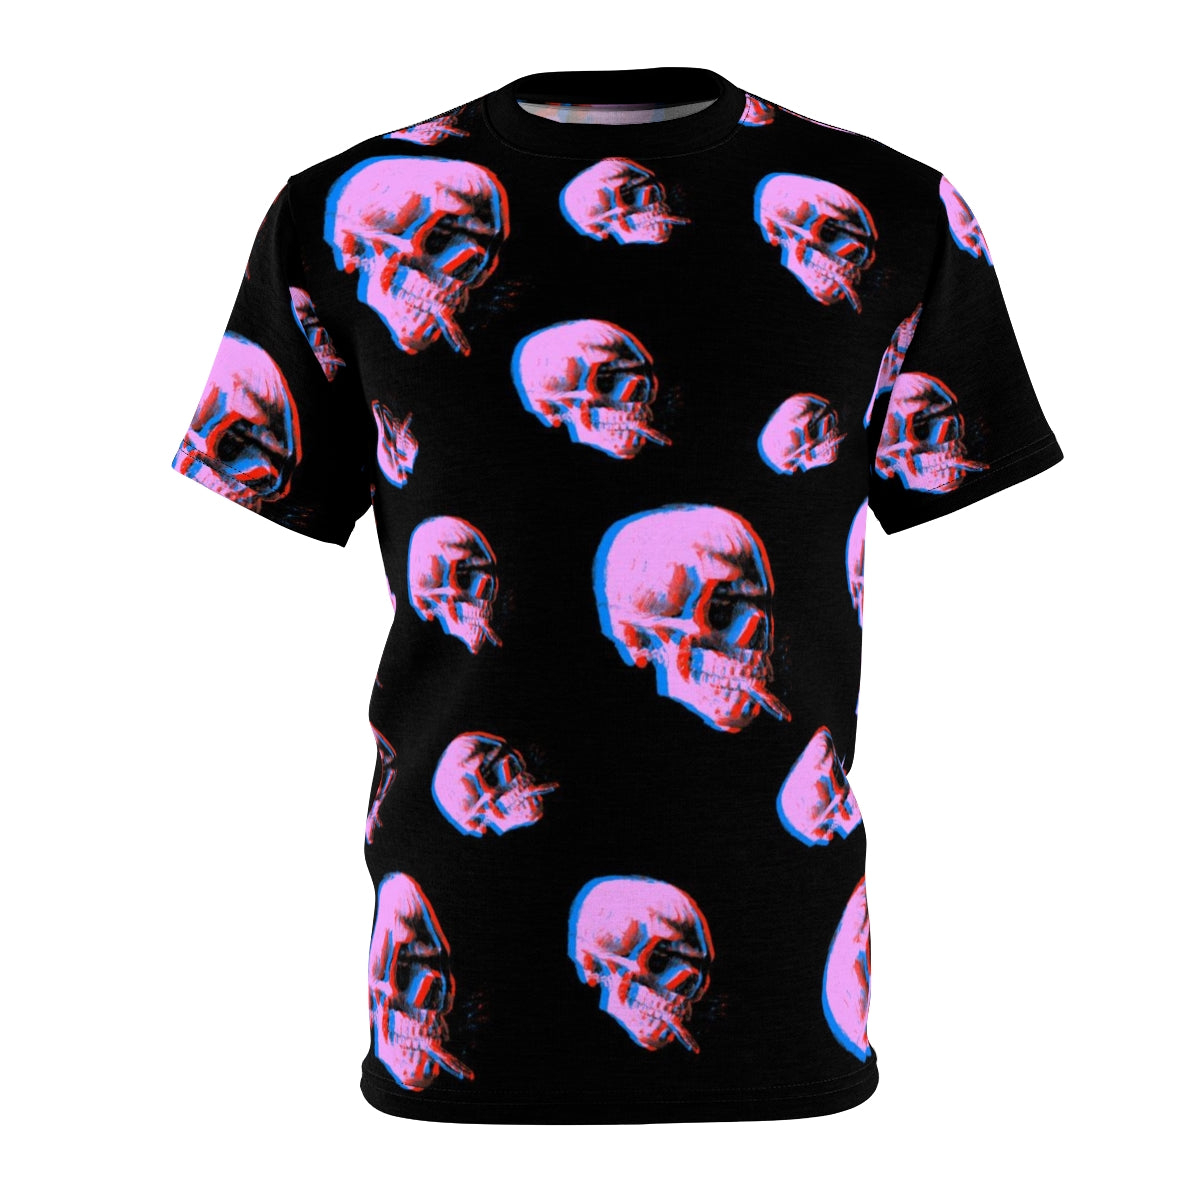 Skull With Burning Cigarette - Van Gogh Tribute | Art Freak Pop T-shirt